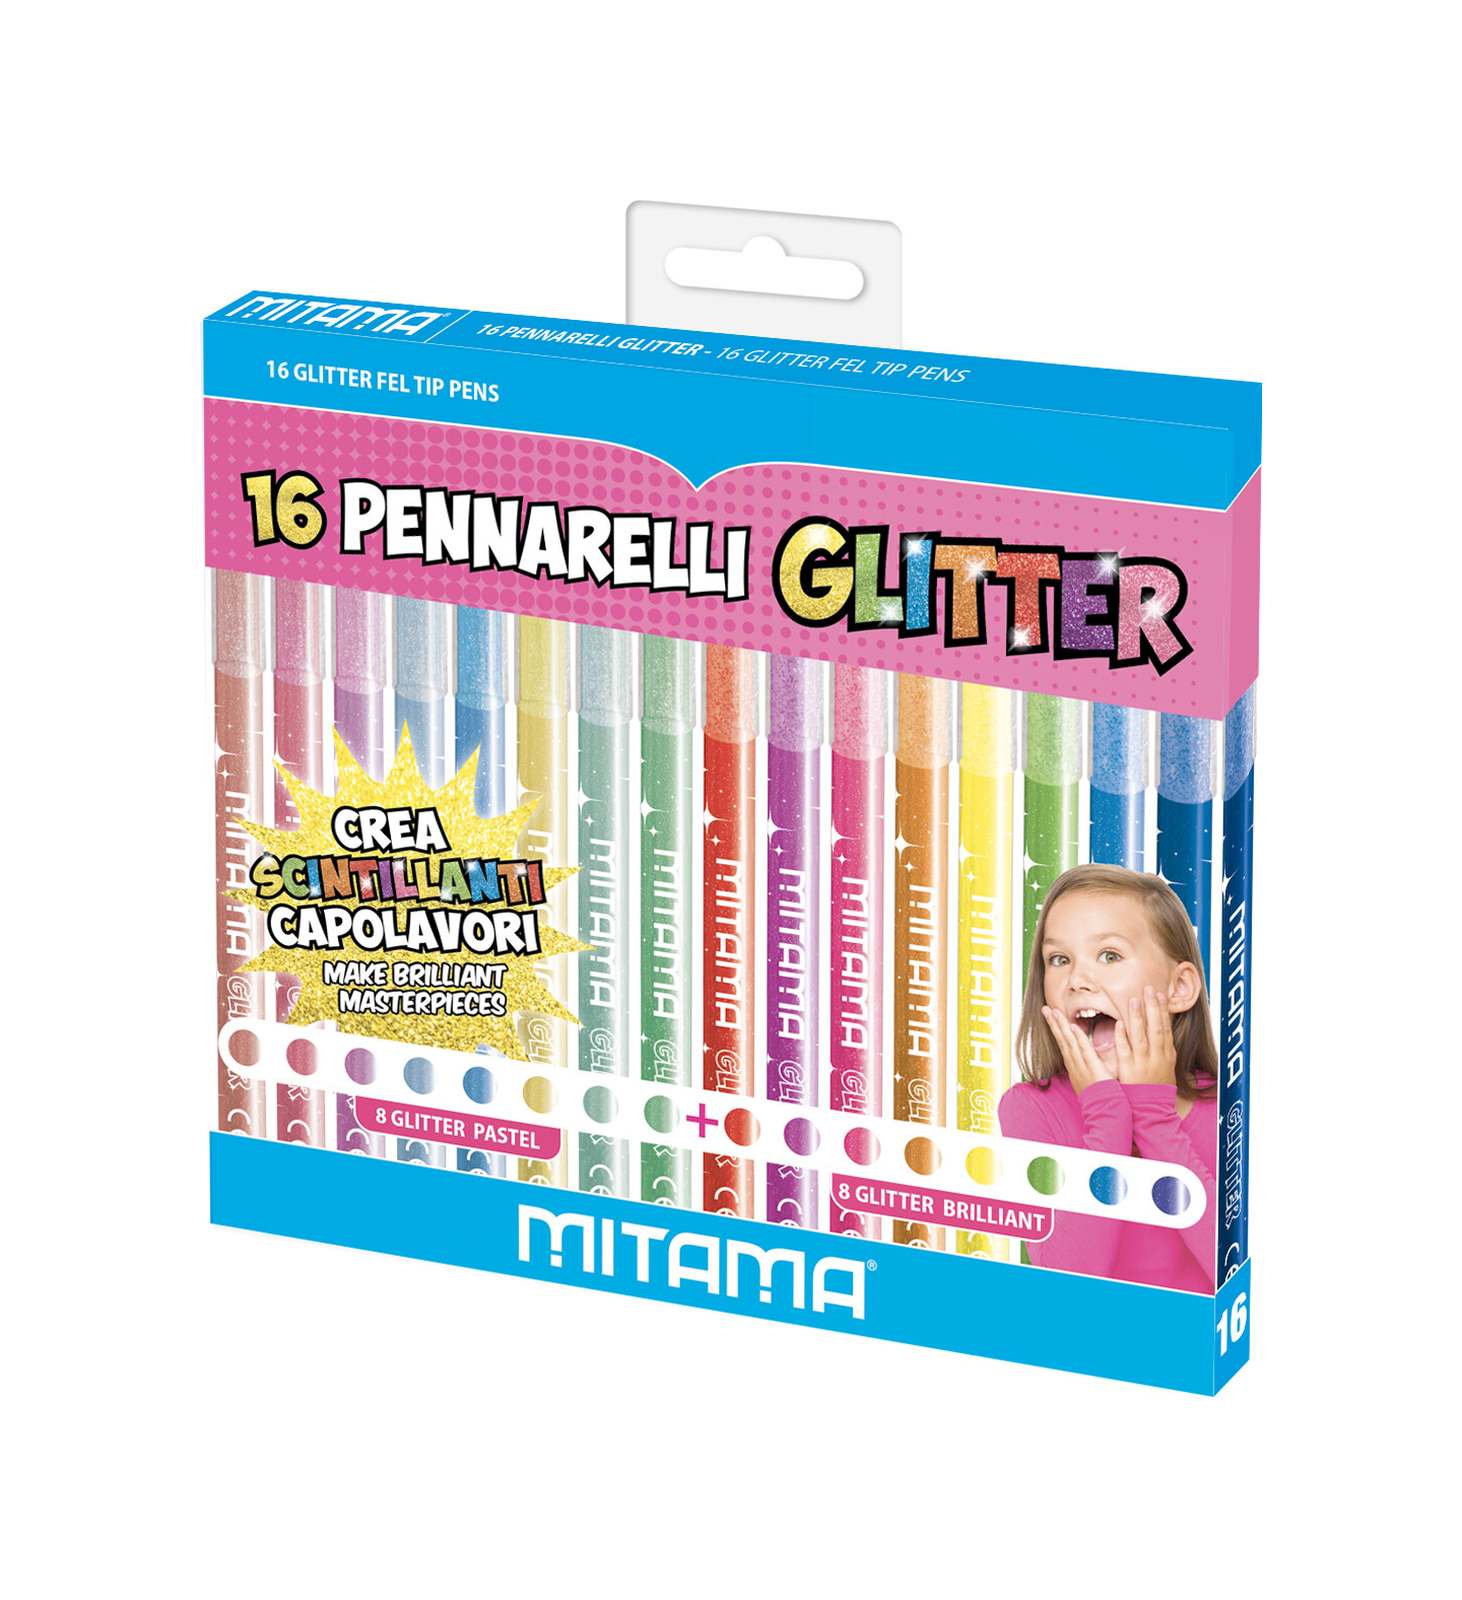 Pennarelli glitter triangolari, confezioni 16 pz (8 pastel + 8 brillanti) - 